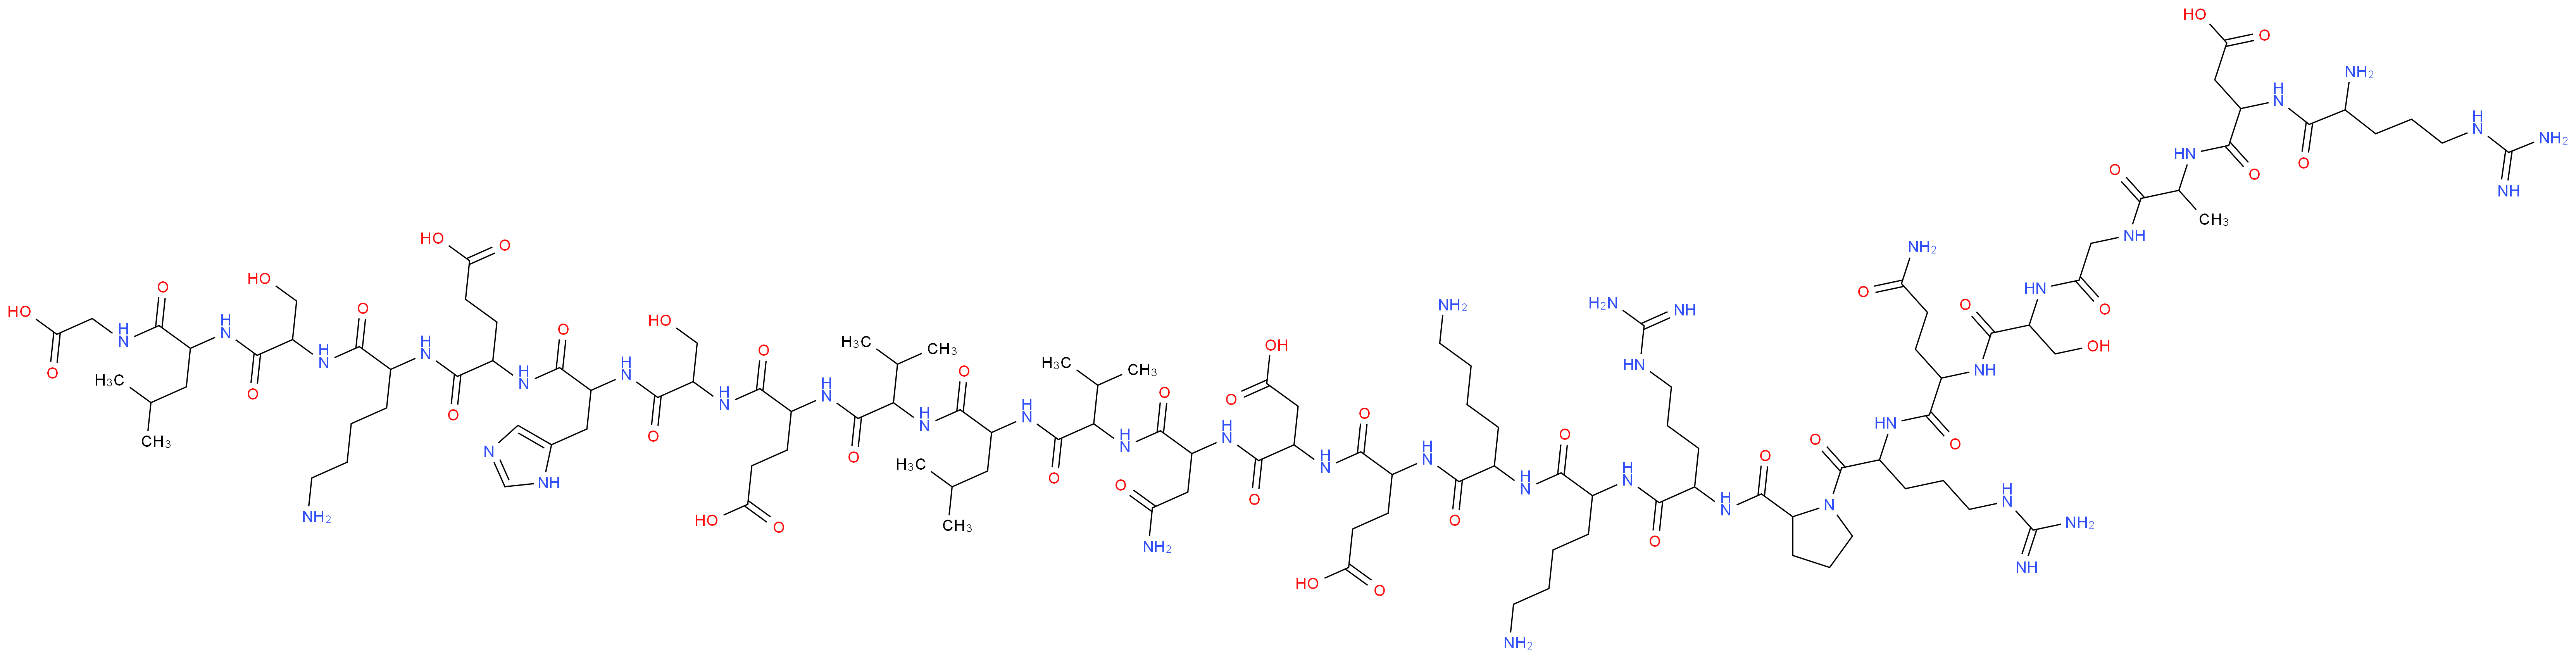 4-[(5-amino-1-{[1-({1-[(carboxymethyl)carbamoyl]-3-methylbutyl}carbamoyl)-2-hydroxyethyl]carbamoyl}pentyl)carbamoyl]-4-{2-[2-(2-{2-[2-(2-{2-[2-(2-{6-amino-2-[6-amino-2-(2-{[1-(2-{2-[2-(2-{2-[2-(2-amino-5-carbamimidamidopentanamido)-3-carboxypropanamido]propanamido}acetamido)-3-hydroxypropanamido]-4-carbamoylbutanamido}-5-carbamimidamidopentanoyl)pyrrolidin-2-yl]formamido}-5-carbamimidamidopentanamido)hexanamido]hexanamido}-4-carboxybutanamido)-3-carboxypropanamido]-3-carbamoylpropanamido}-3-methylbutanamido)-4-methylpentanamido]-3-methylbutanamido}-4-carboxybutanamido)-3-hydroxypropanamido]-3-(1H-imidazol-5-yl)propanamido}butanoic acid_分子结构_CAS_64421-69-8